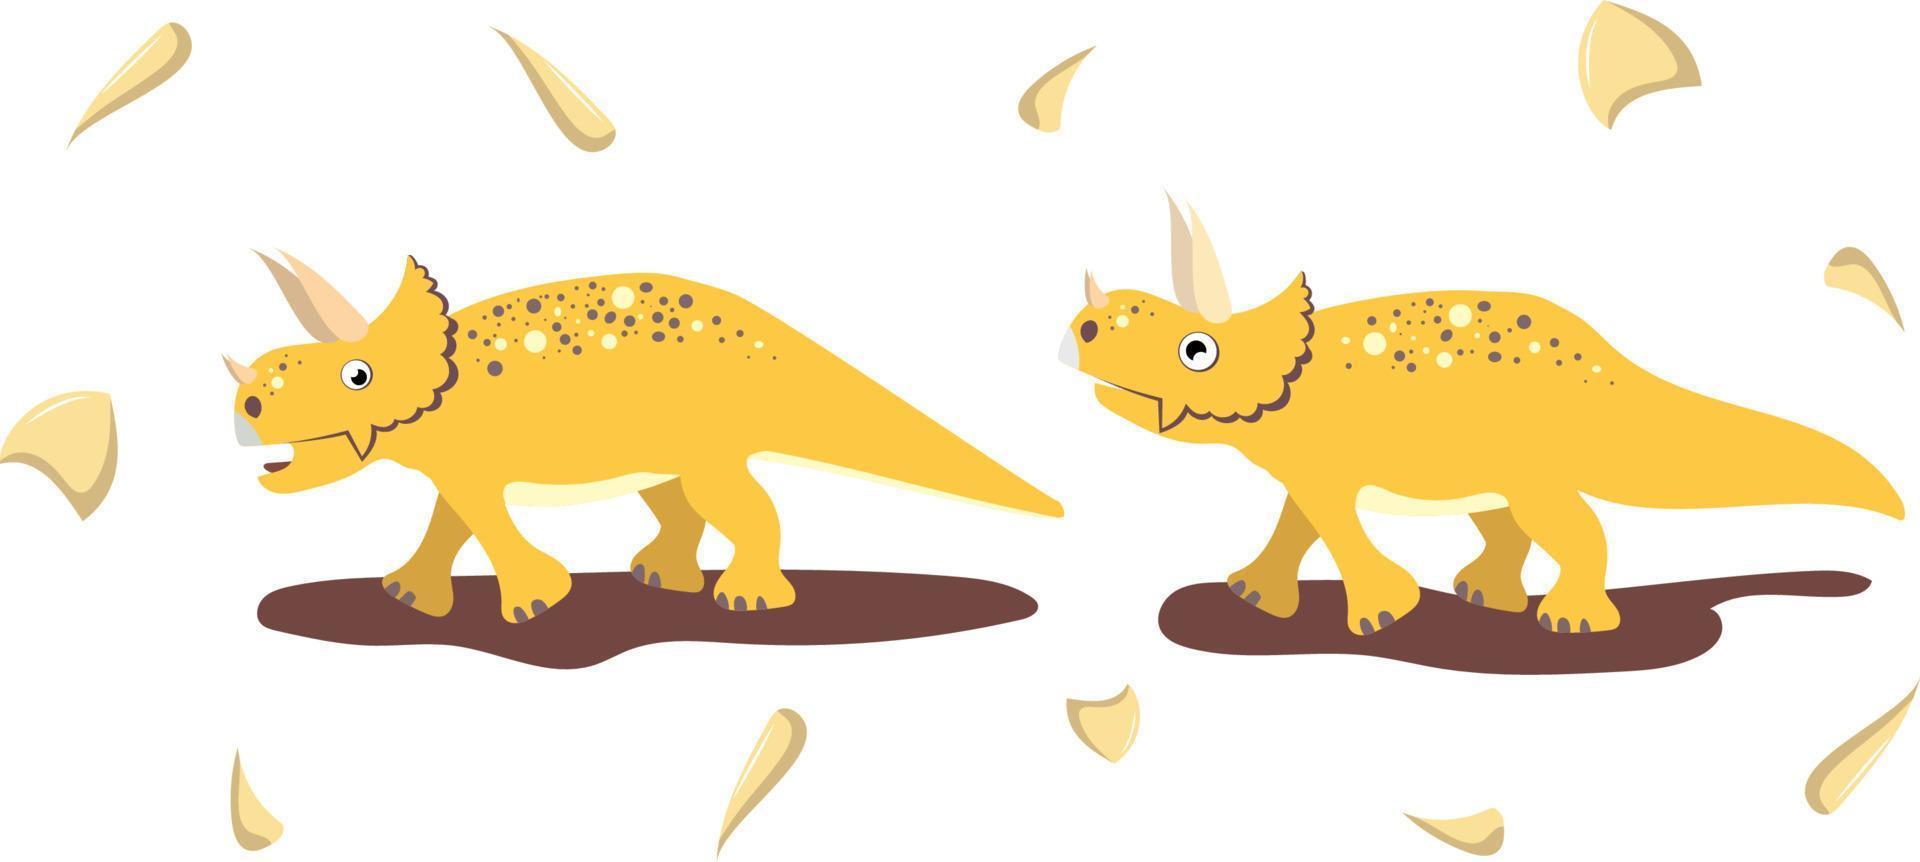 plantenetende dinosaurus beweegt in verschillende poses vector